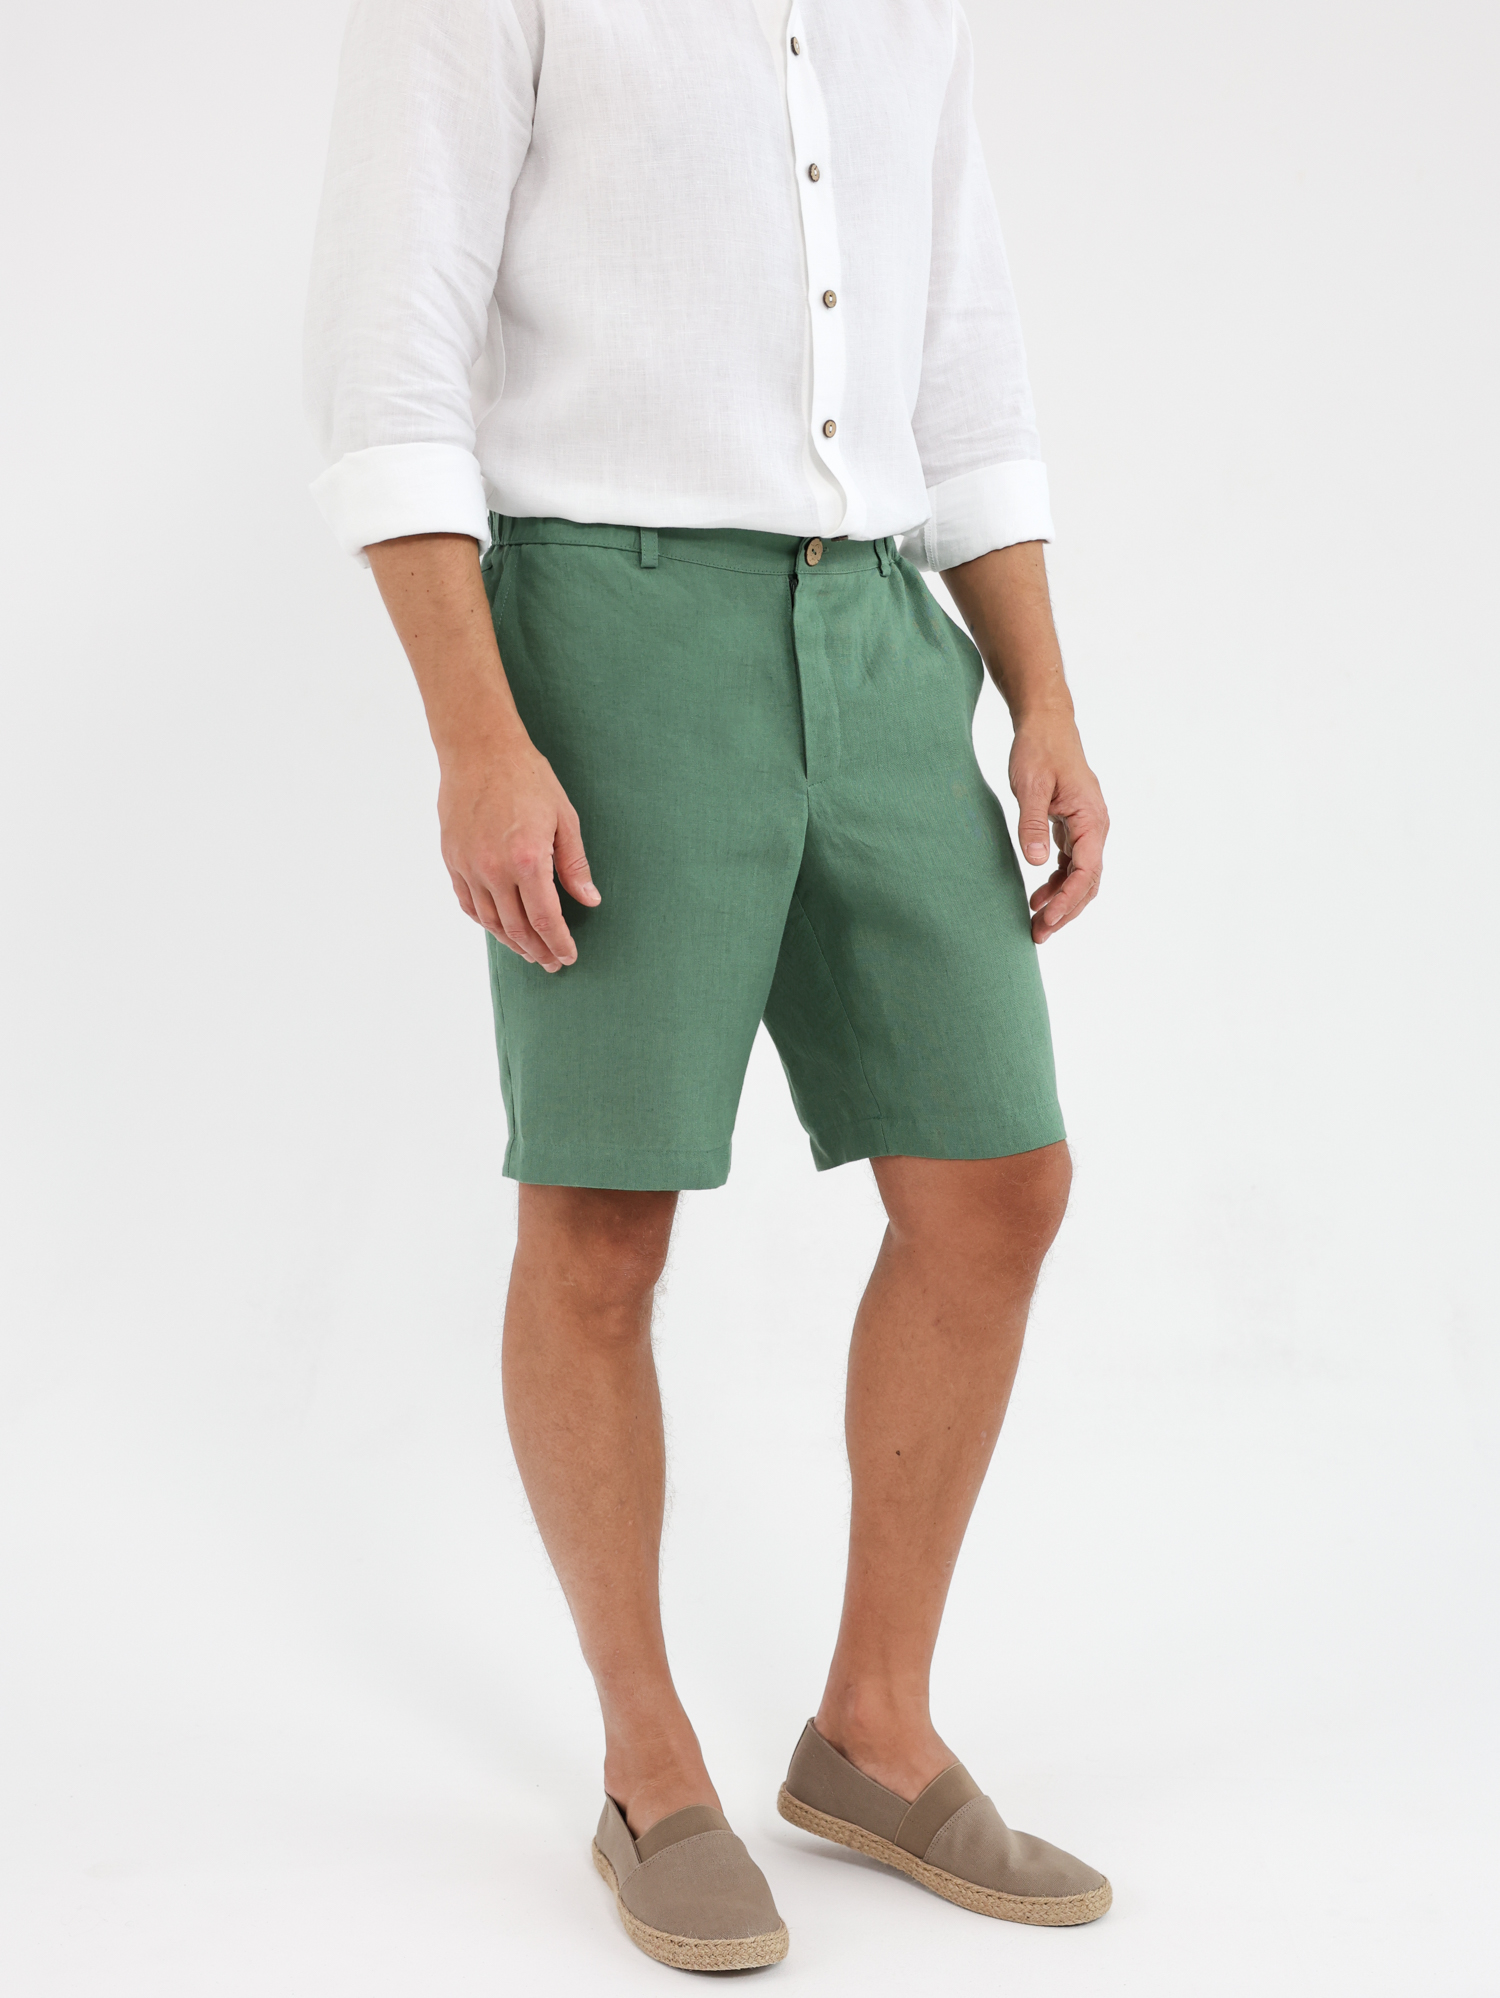 Green linen men's shorts